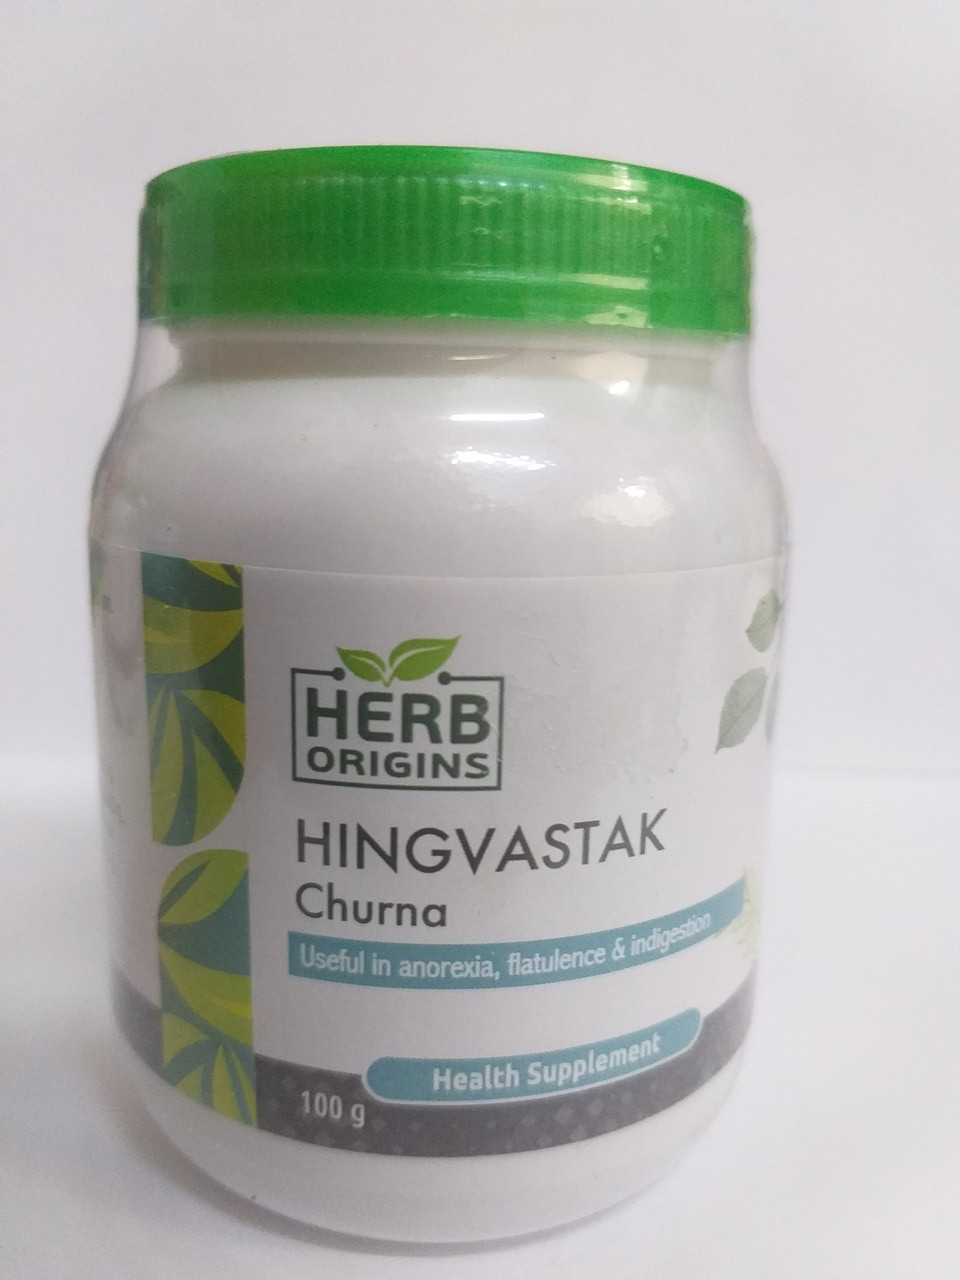 Хингваштака чурна, 100 гр, Herb Origins, для улучшения пищеварения